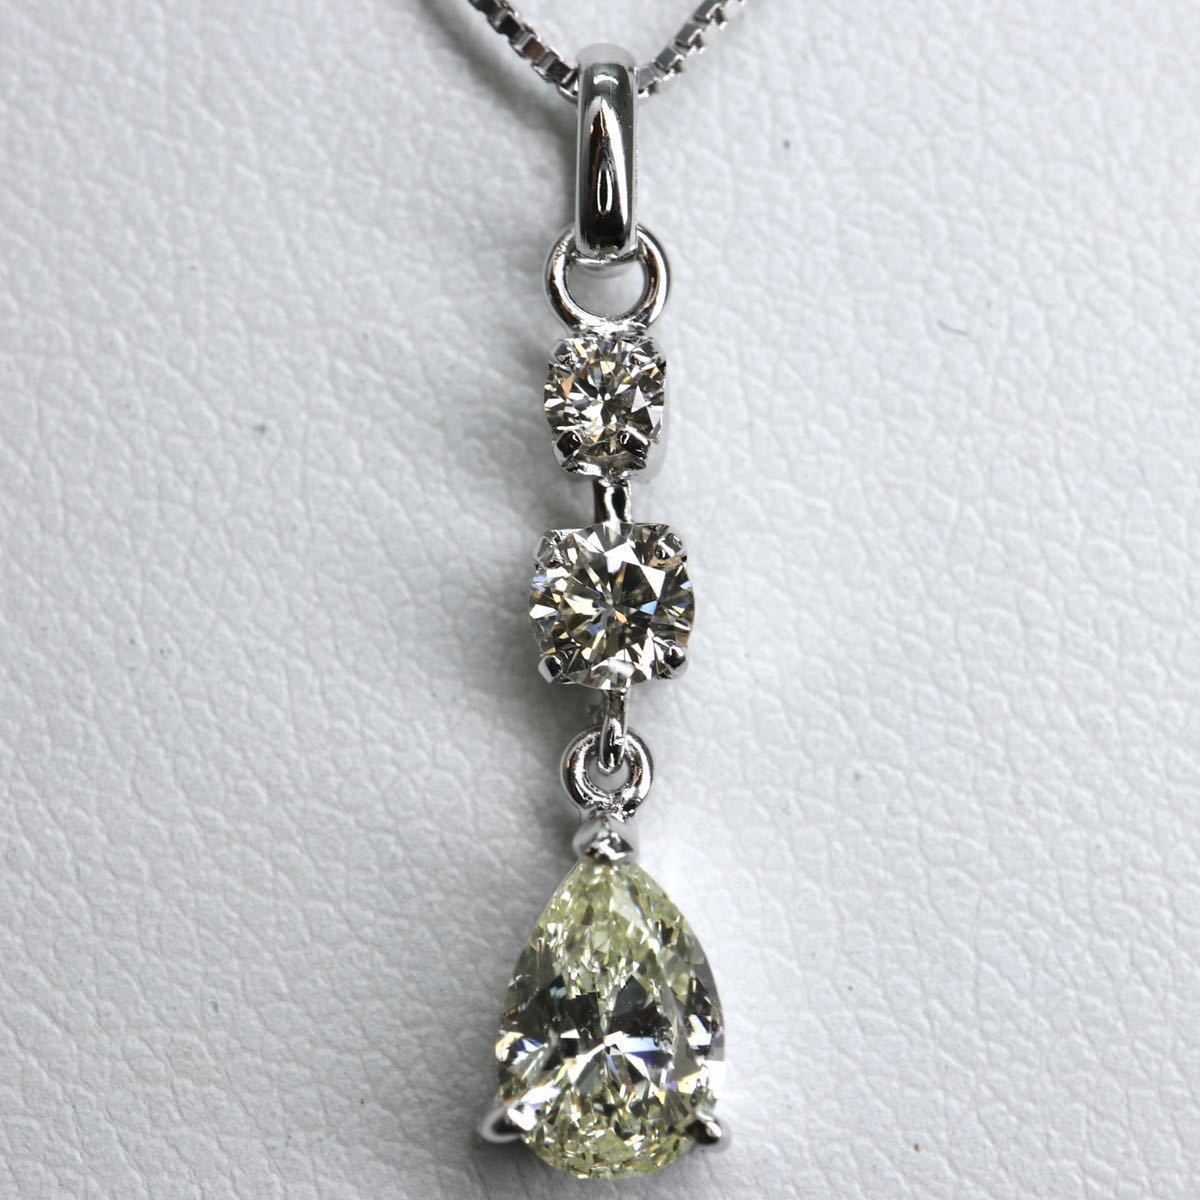 〈天然ダイヤモンドネックレス〉a 0.502/0.18ct K18WG 45cm 2.3g diamond jewelry necklace EC0/EC6